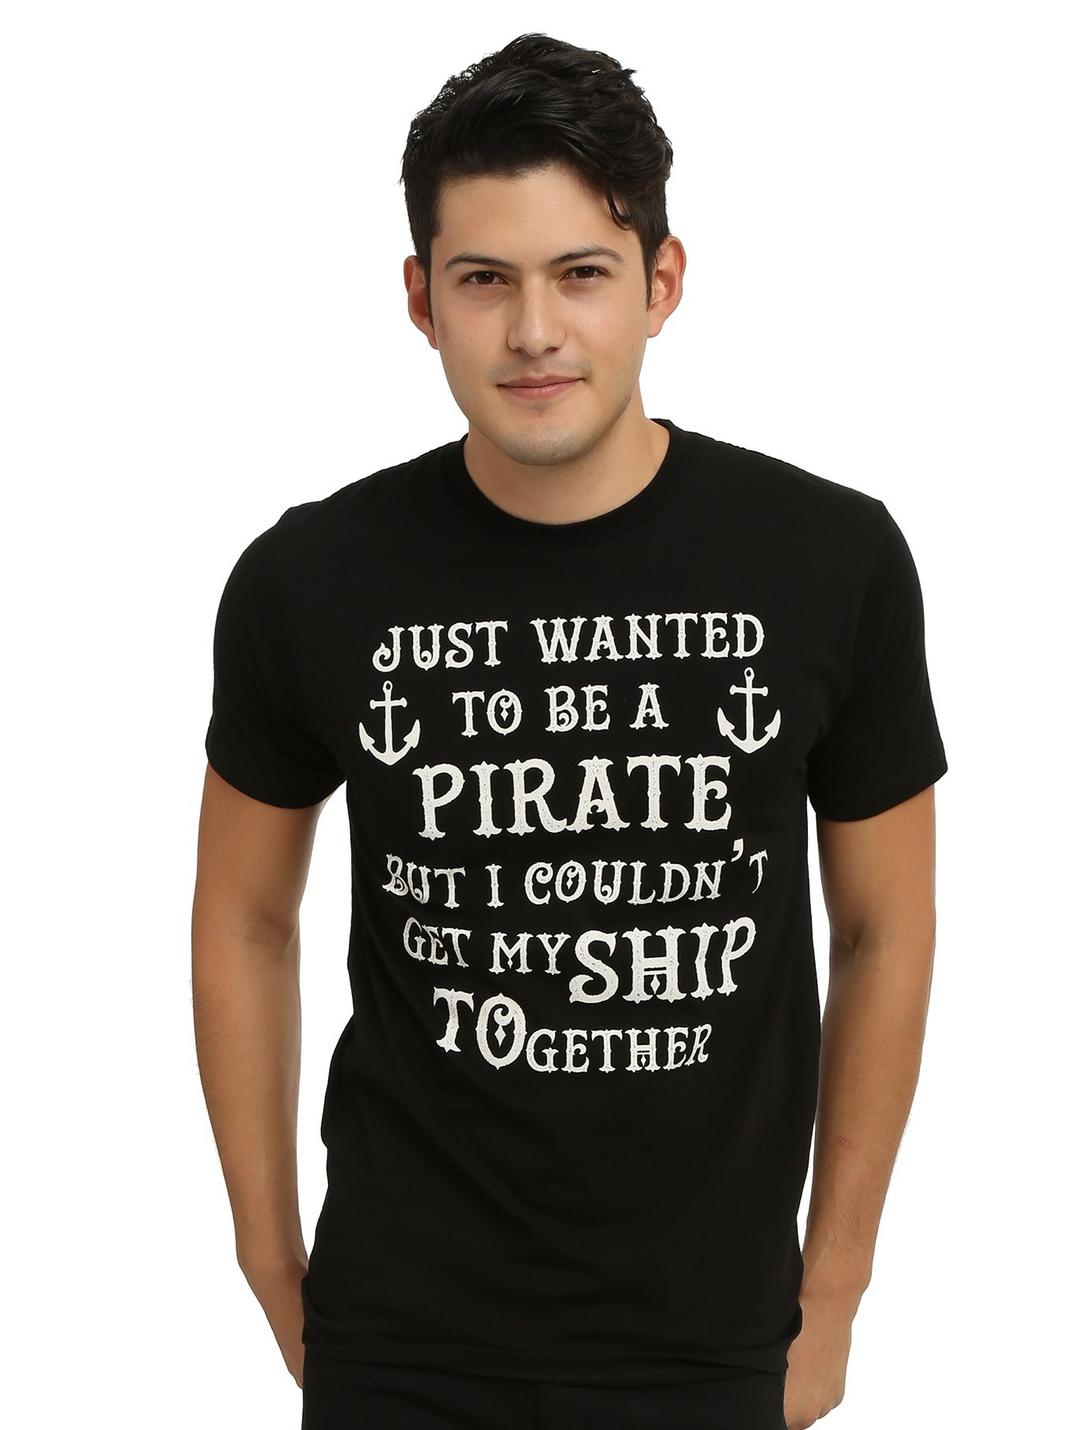 Get My Ship Together T-Shirt, BLACK, hi-res